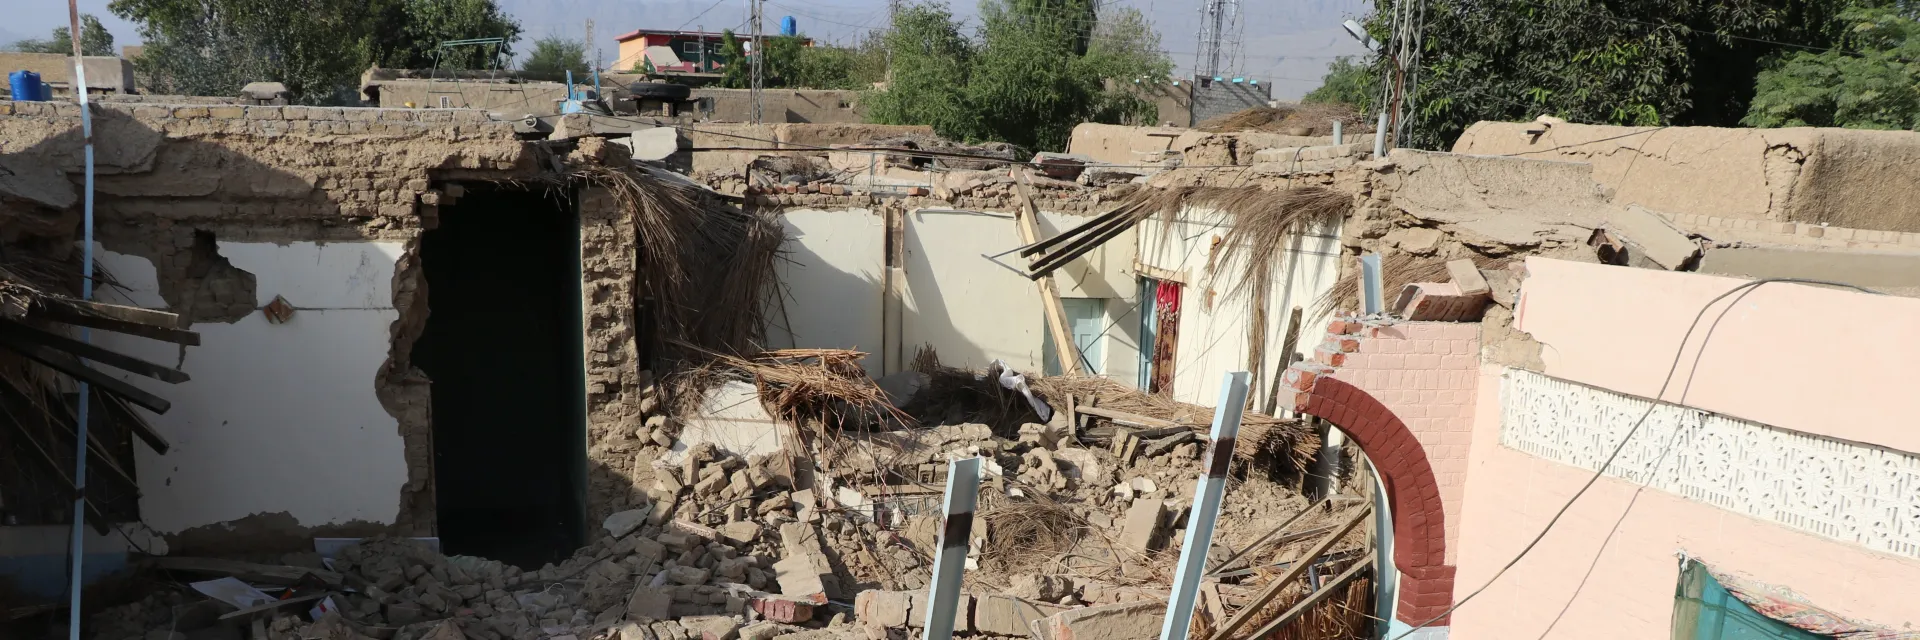 Des maisons ont été détruites par le séisme au Pakistan